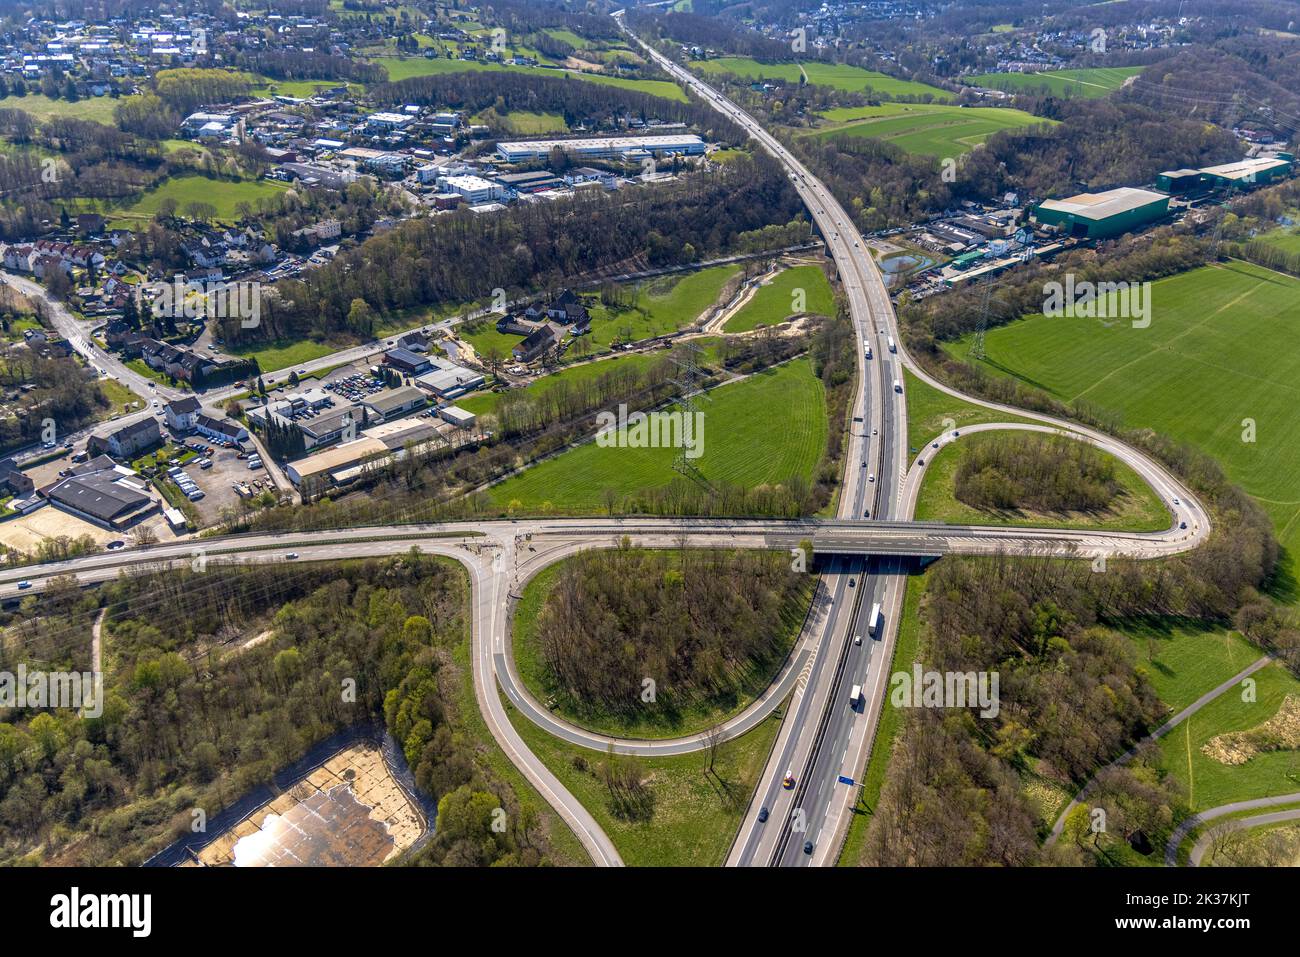 Vista aérea, zona industrial Wittener Straße, autopista A43 con el cruce Witten-Herbede, renaturación de la Kamperbach, Westherbede, Witten, Ruhr Foto de stock